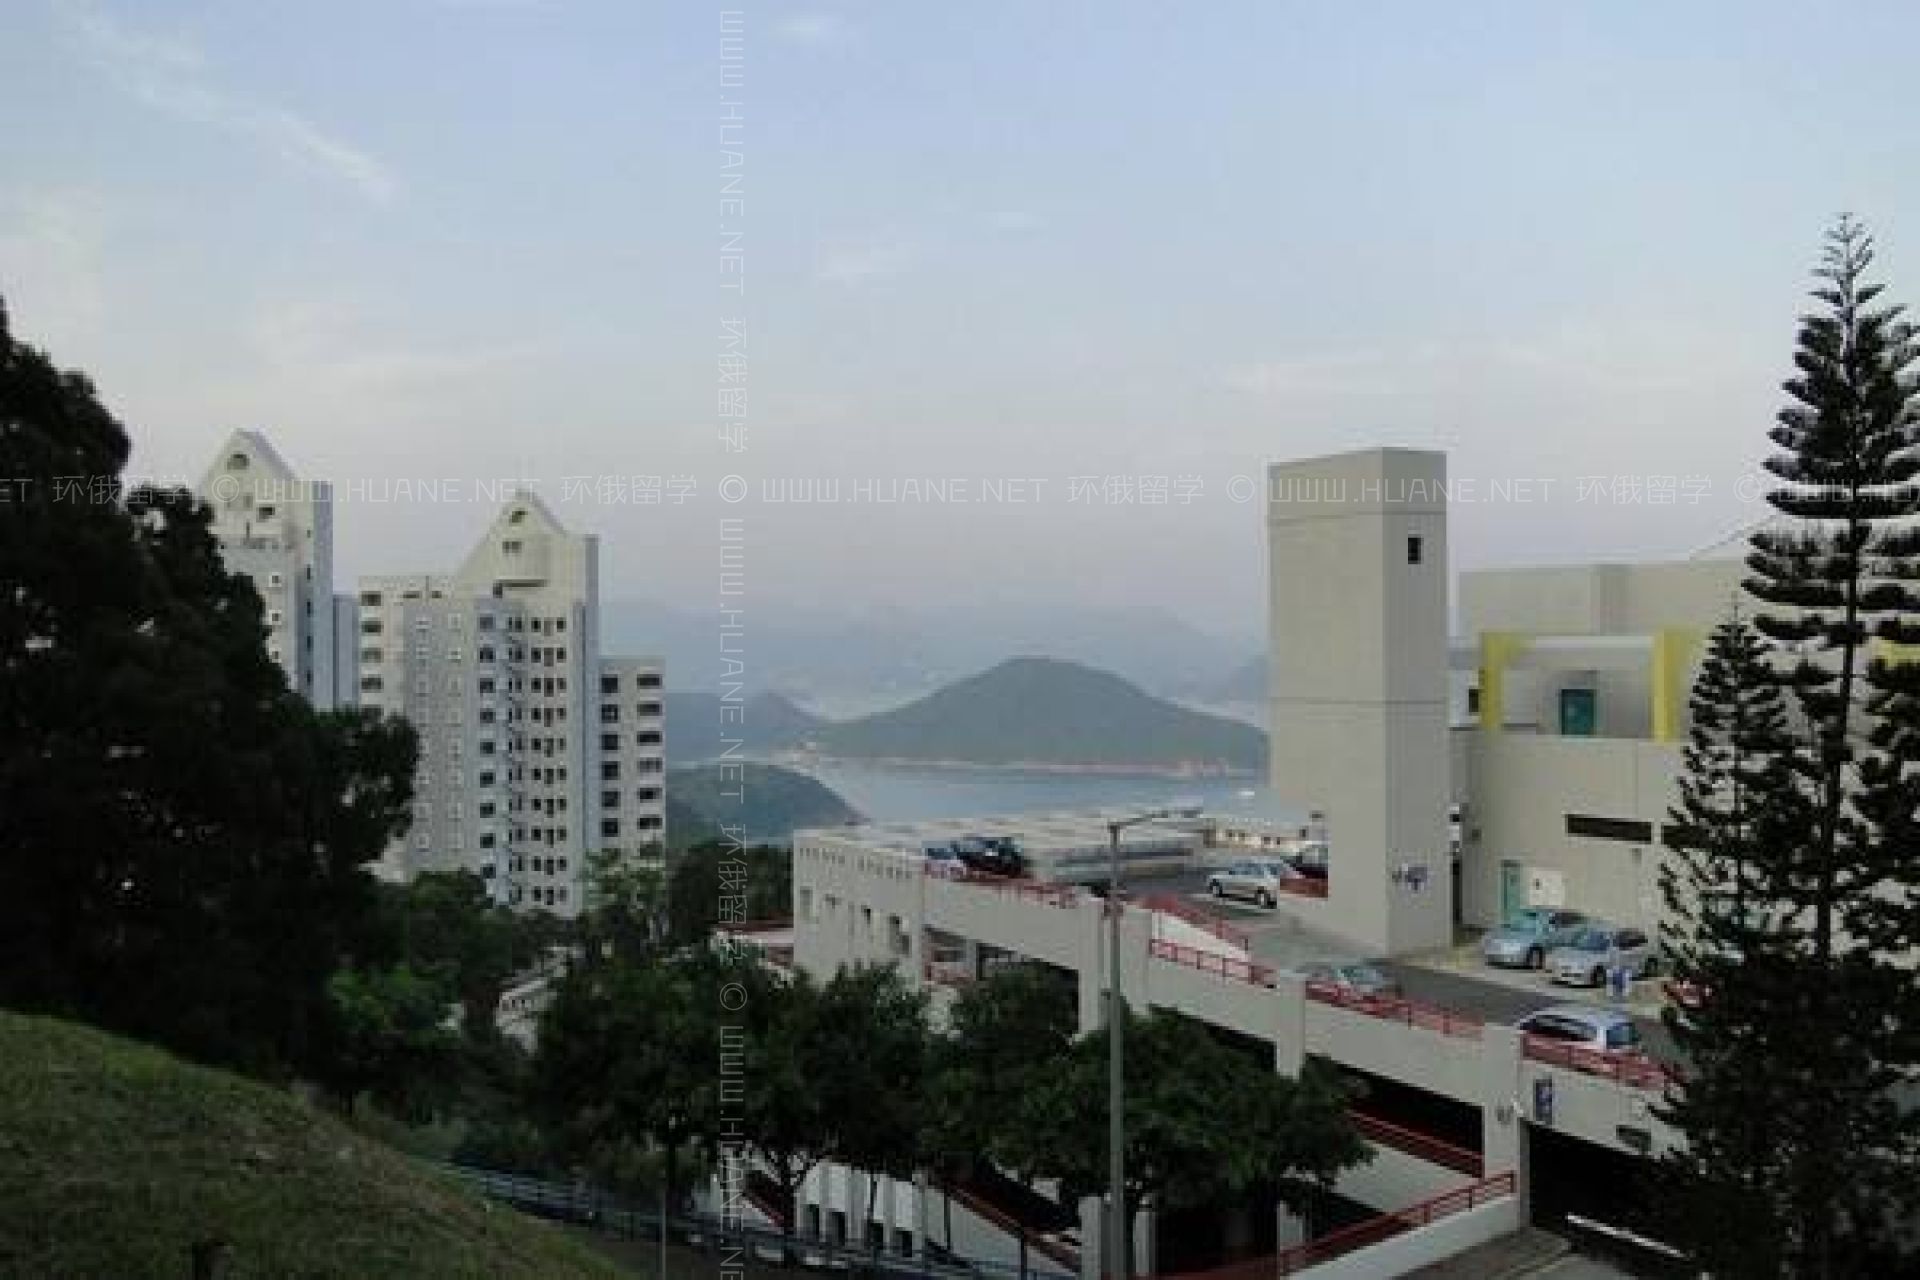 中国香港科技大学